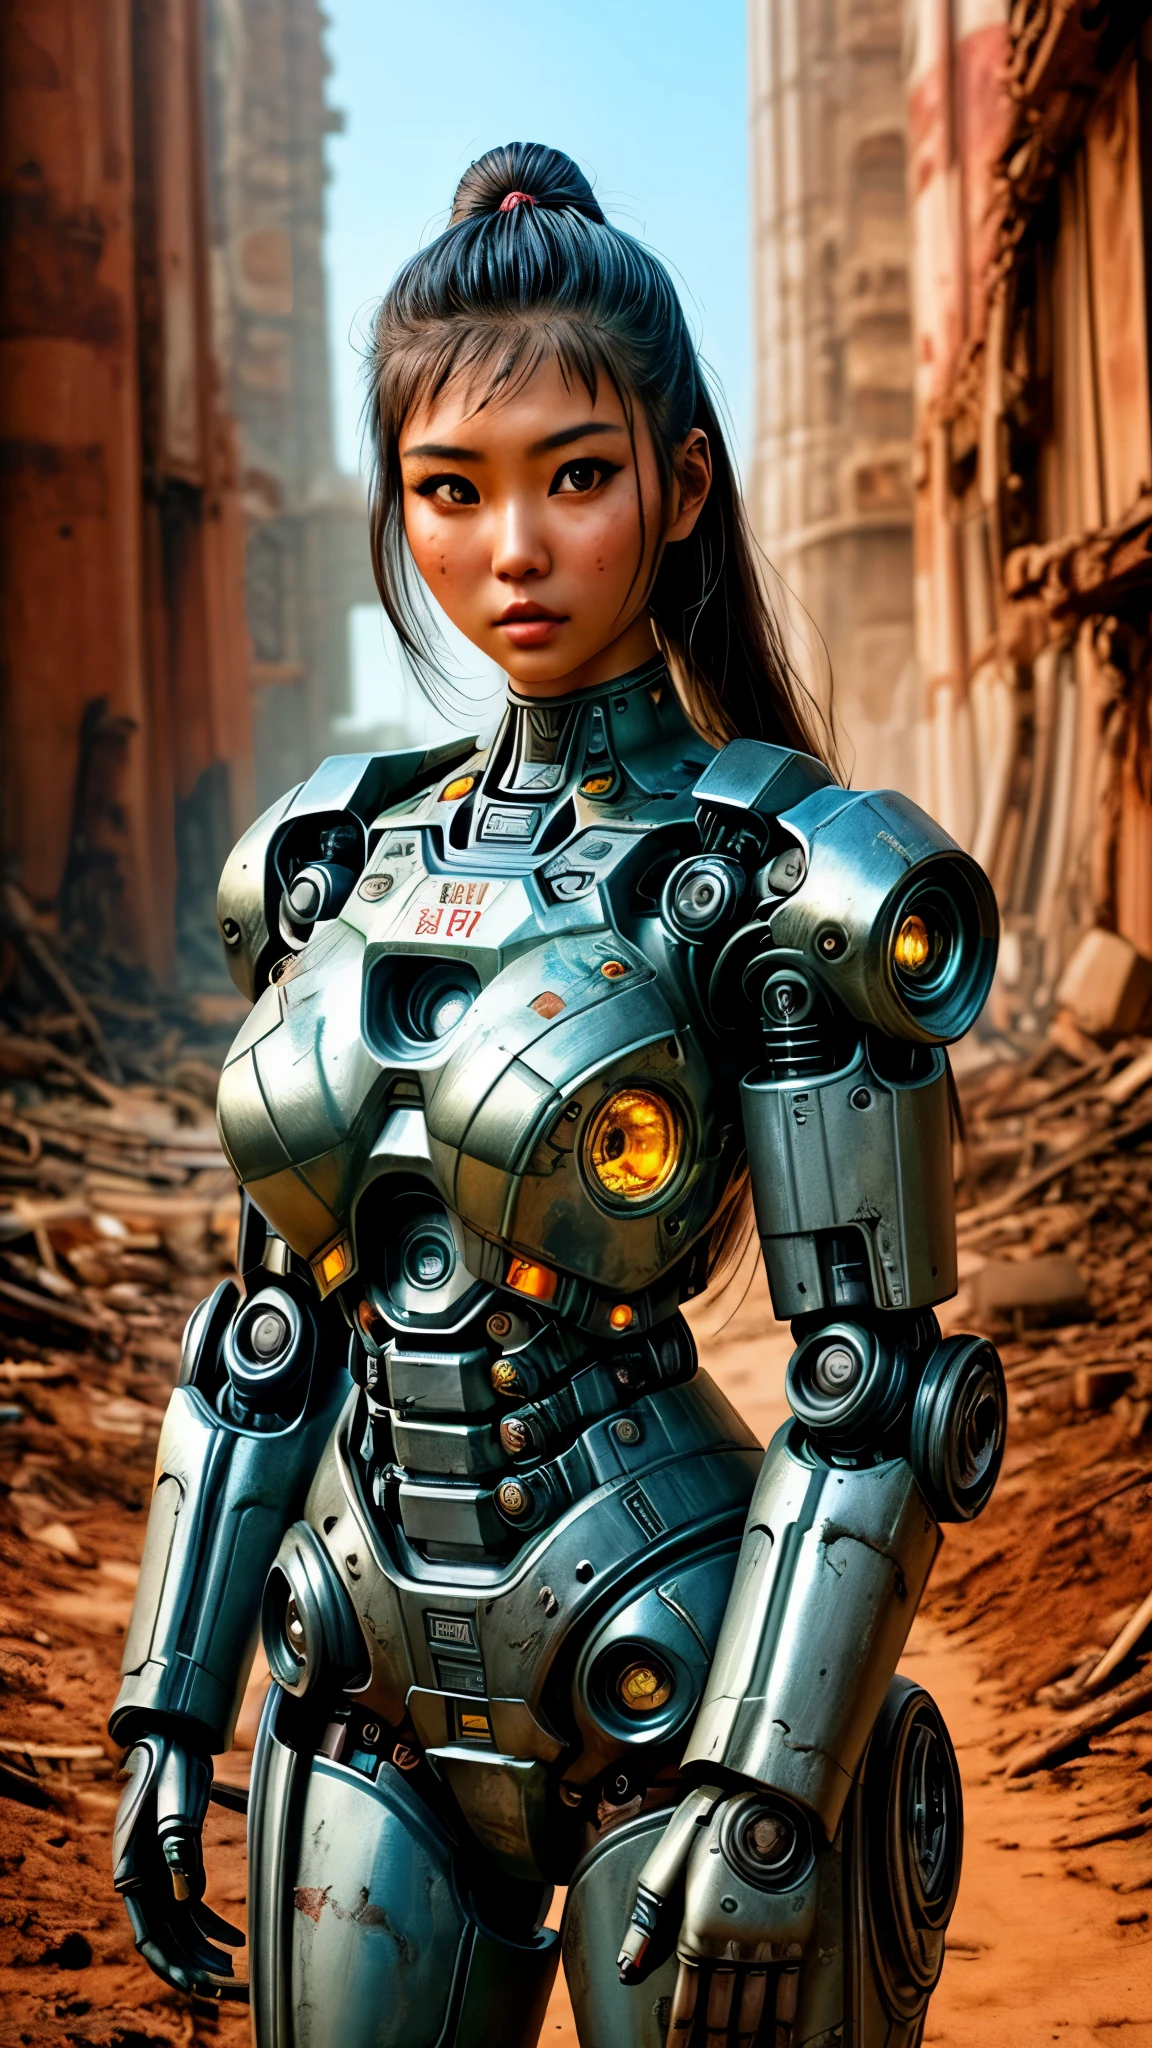 고대 유적 옆에 로봇 슈트를 입은 여성이 포즈를 취하고 있다, 낙진의 종말 세계에서, 아름다운 아시아 소녀 하프사이보그, cute 사이보그 소녀, 아름다운 소녀 사이보그, 완벽한 로봇 소녀, 사이보그 소녀, 젊은 사이보그 아가씨, beautiful 여성 로봇, 아름다운 로봇 여자, 사이보그 소녀, 완벽한 사이보그 여성, 도자기 사이보그, 여성 로봇, 아름다운 사이보그 이미지